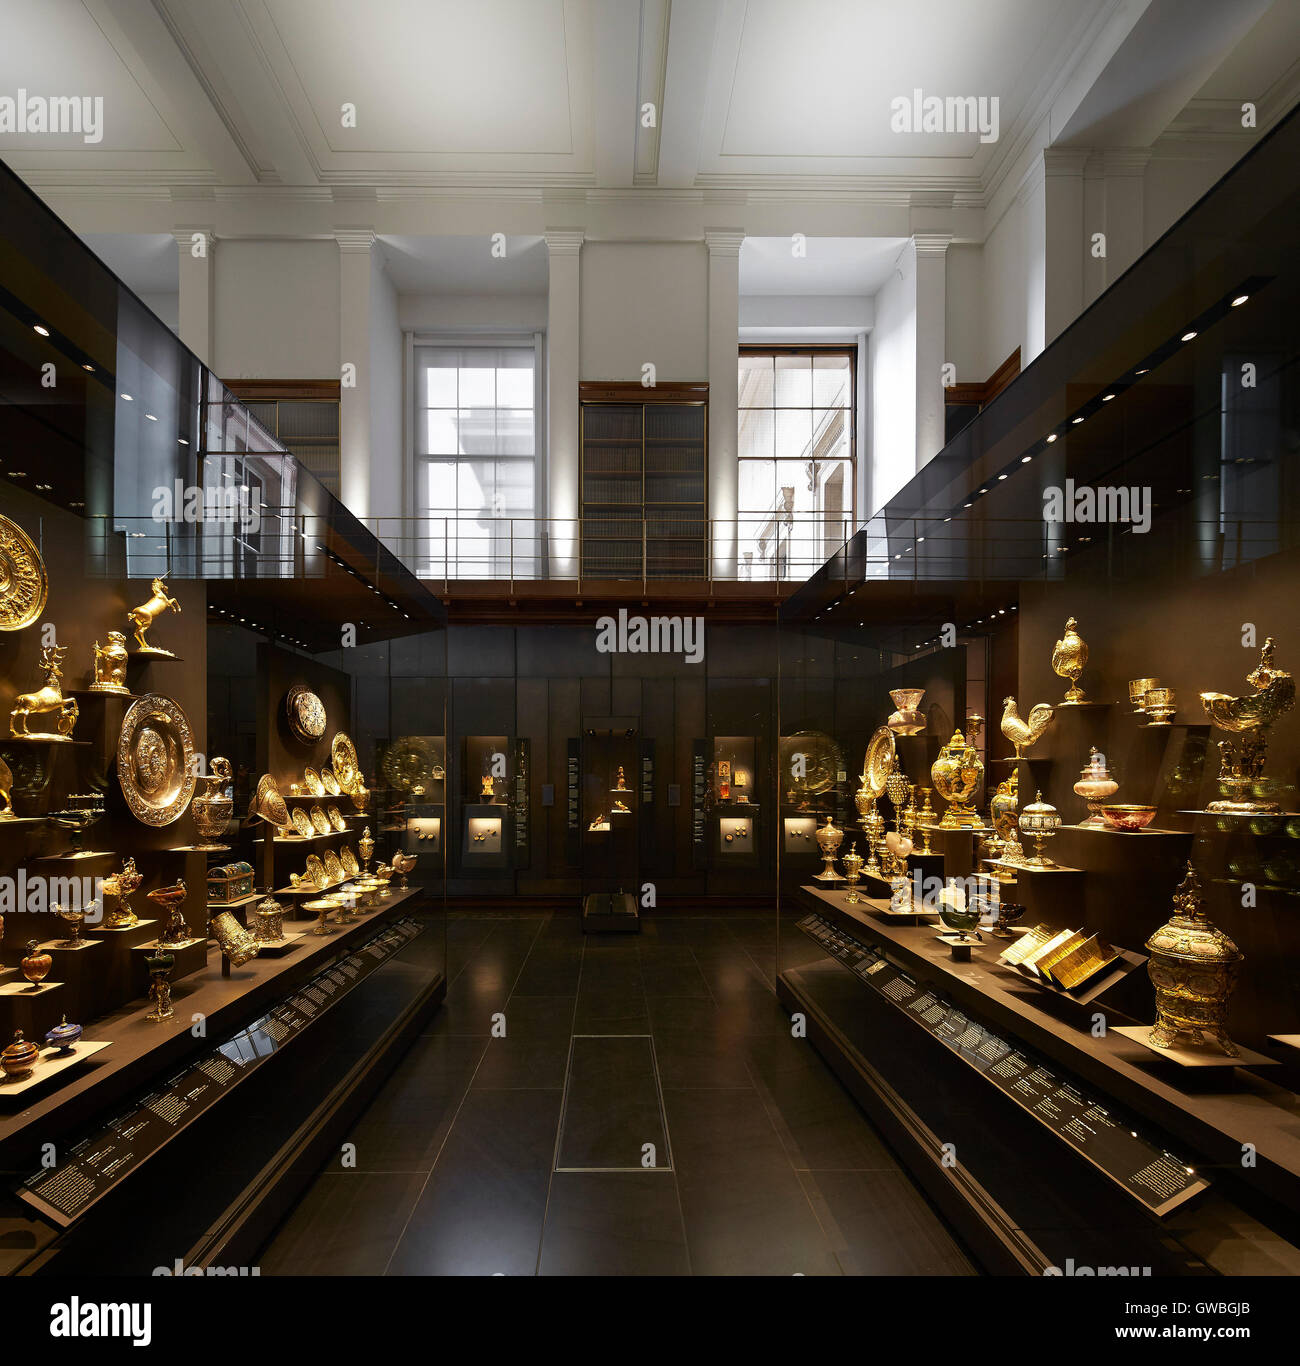 Showcase avec Artefact collection. Waddesdon Legs Gallery au British Museum, Londres, Royaume-Uni. Architecte : Stanton Williams, 2015. Banque D'Images